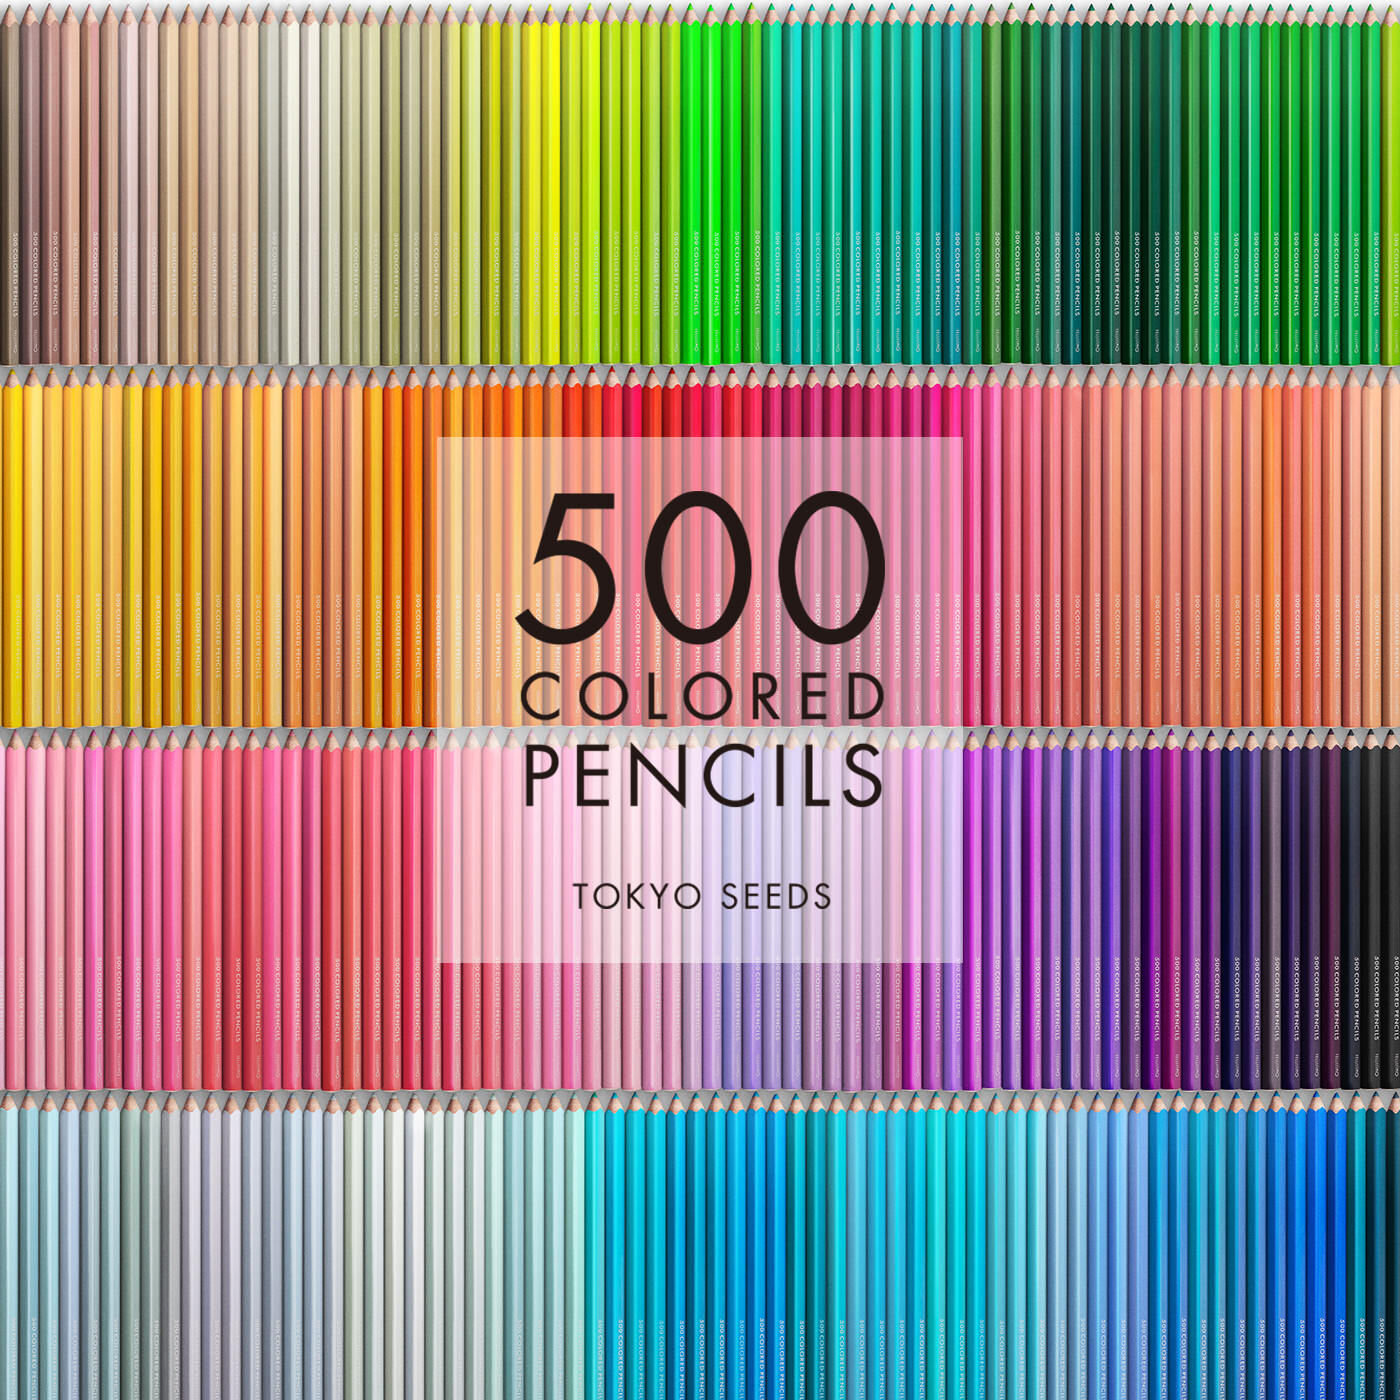 Real Stock|【206/500 BITTER LEMON】500色の色えんぴつ TOKYO SEEDS|1992年、世界初の「500色」という膨大な色数の色えんぴつが誕生して以来、その販売数は発売当初から合わせると、世界55ヵ国10万セット以上。今回、メイド・イン・ジャパンにこだわり、すべてが新しく生まれ変わって登場しました。